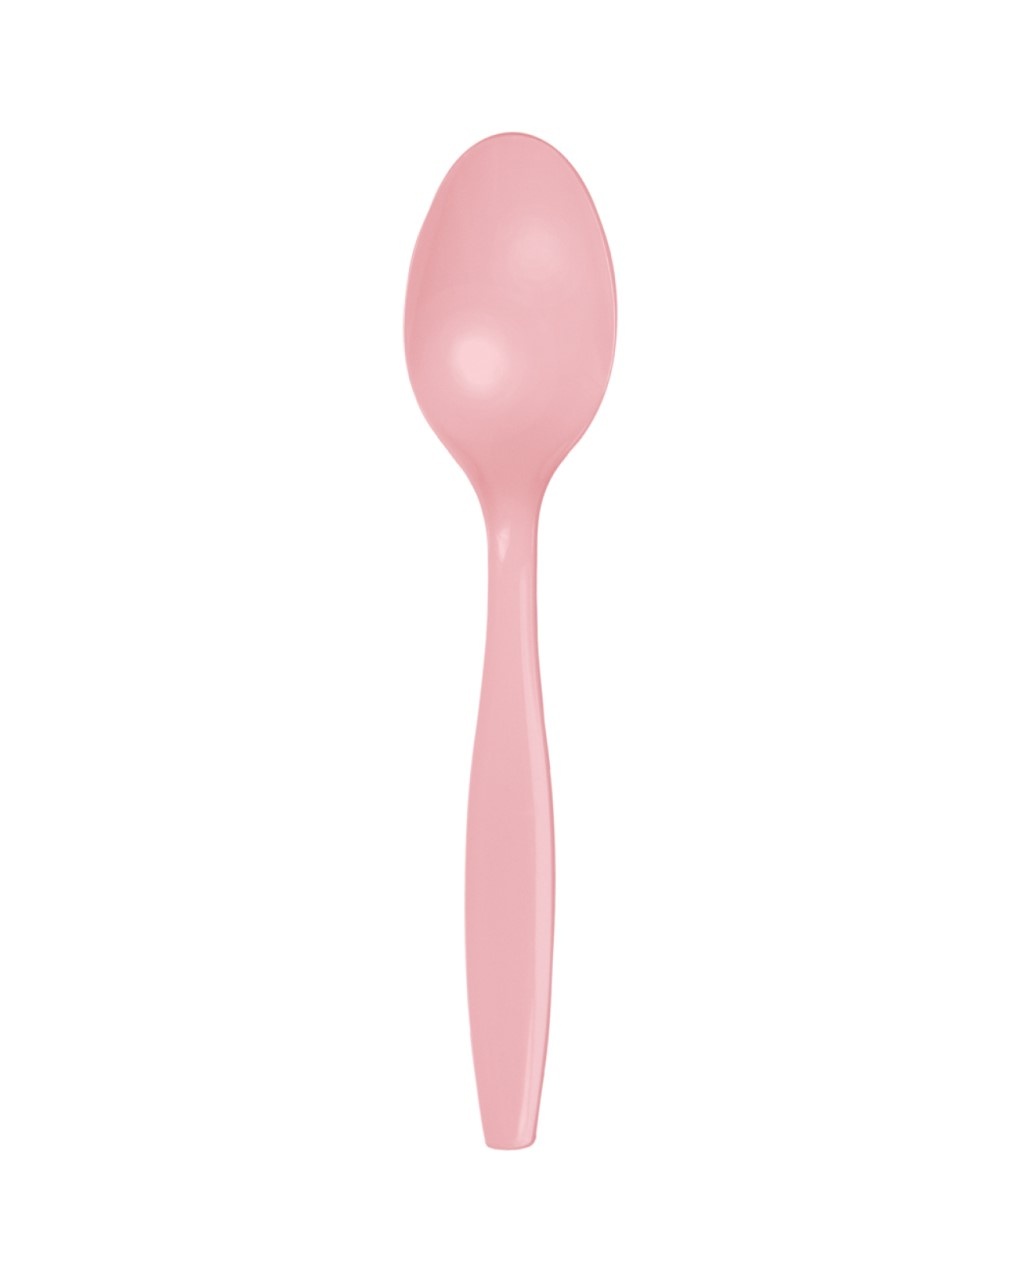 Cucchiaio plastica h. 15,5 cm - 24 pezzi - rosa pastello